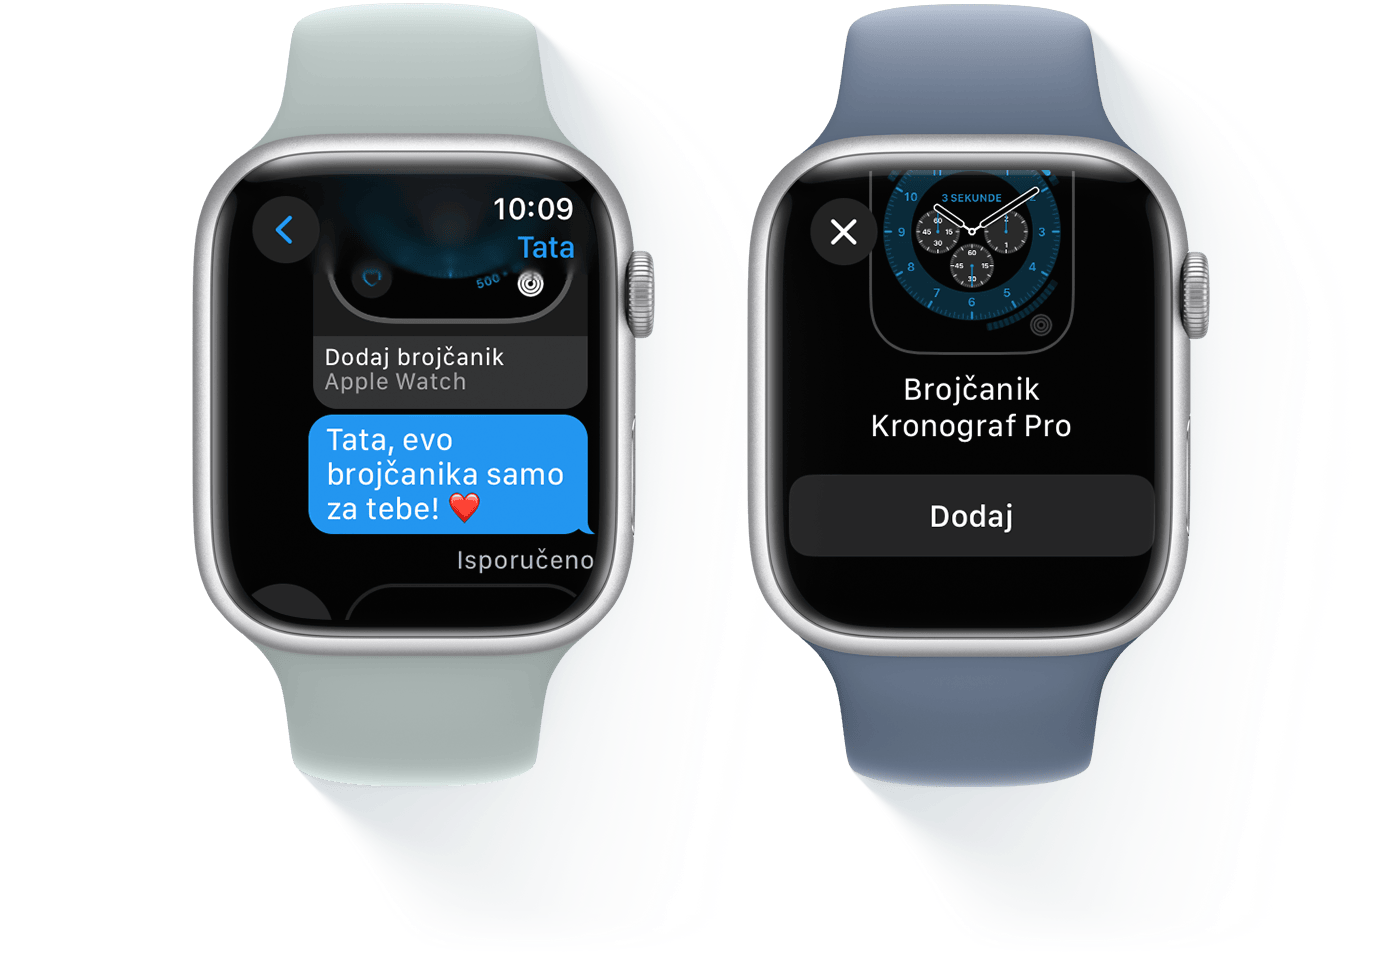 Dva Apple Watch uređaja, jedan koji prikazuje razgovor tekstualnim porukama i drugi koji prikazuje brojčanik Chronograph Pro